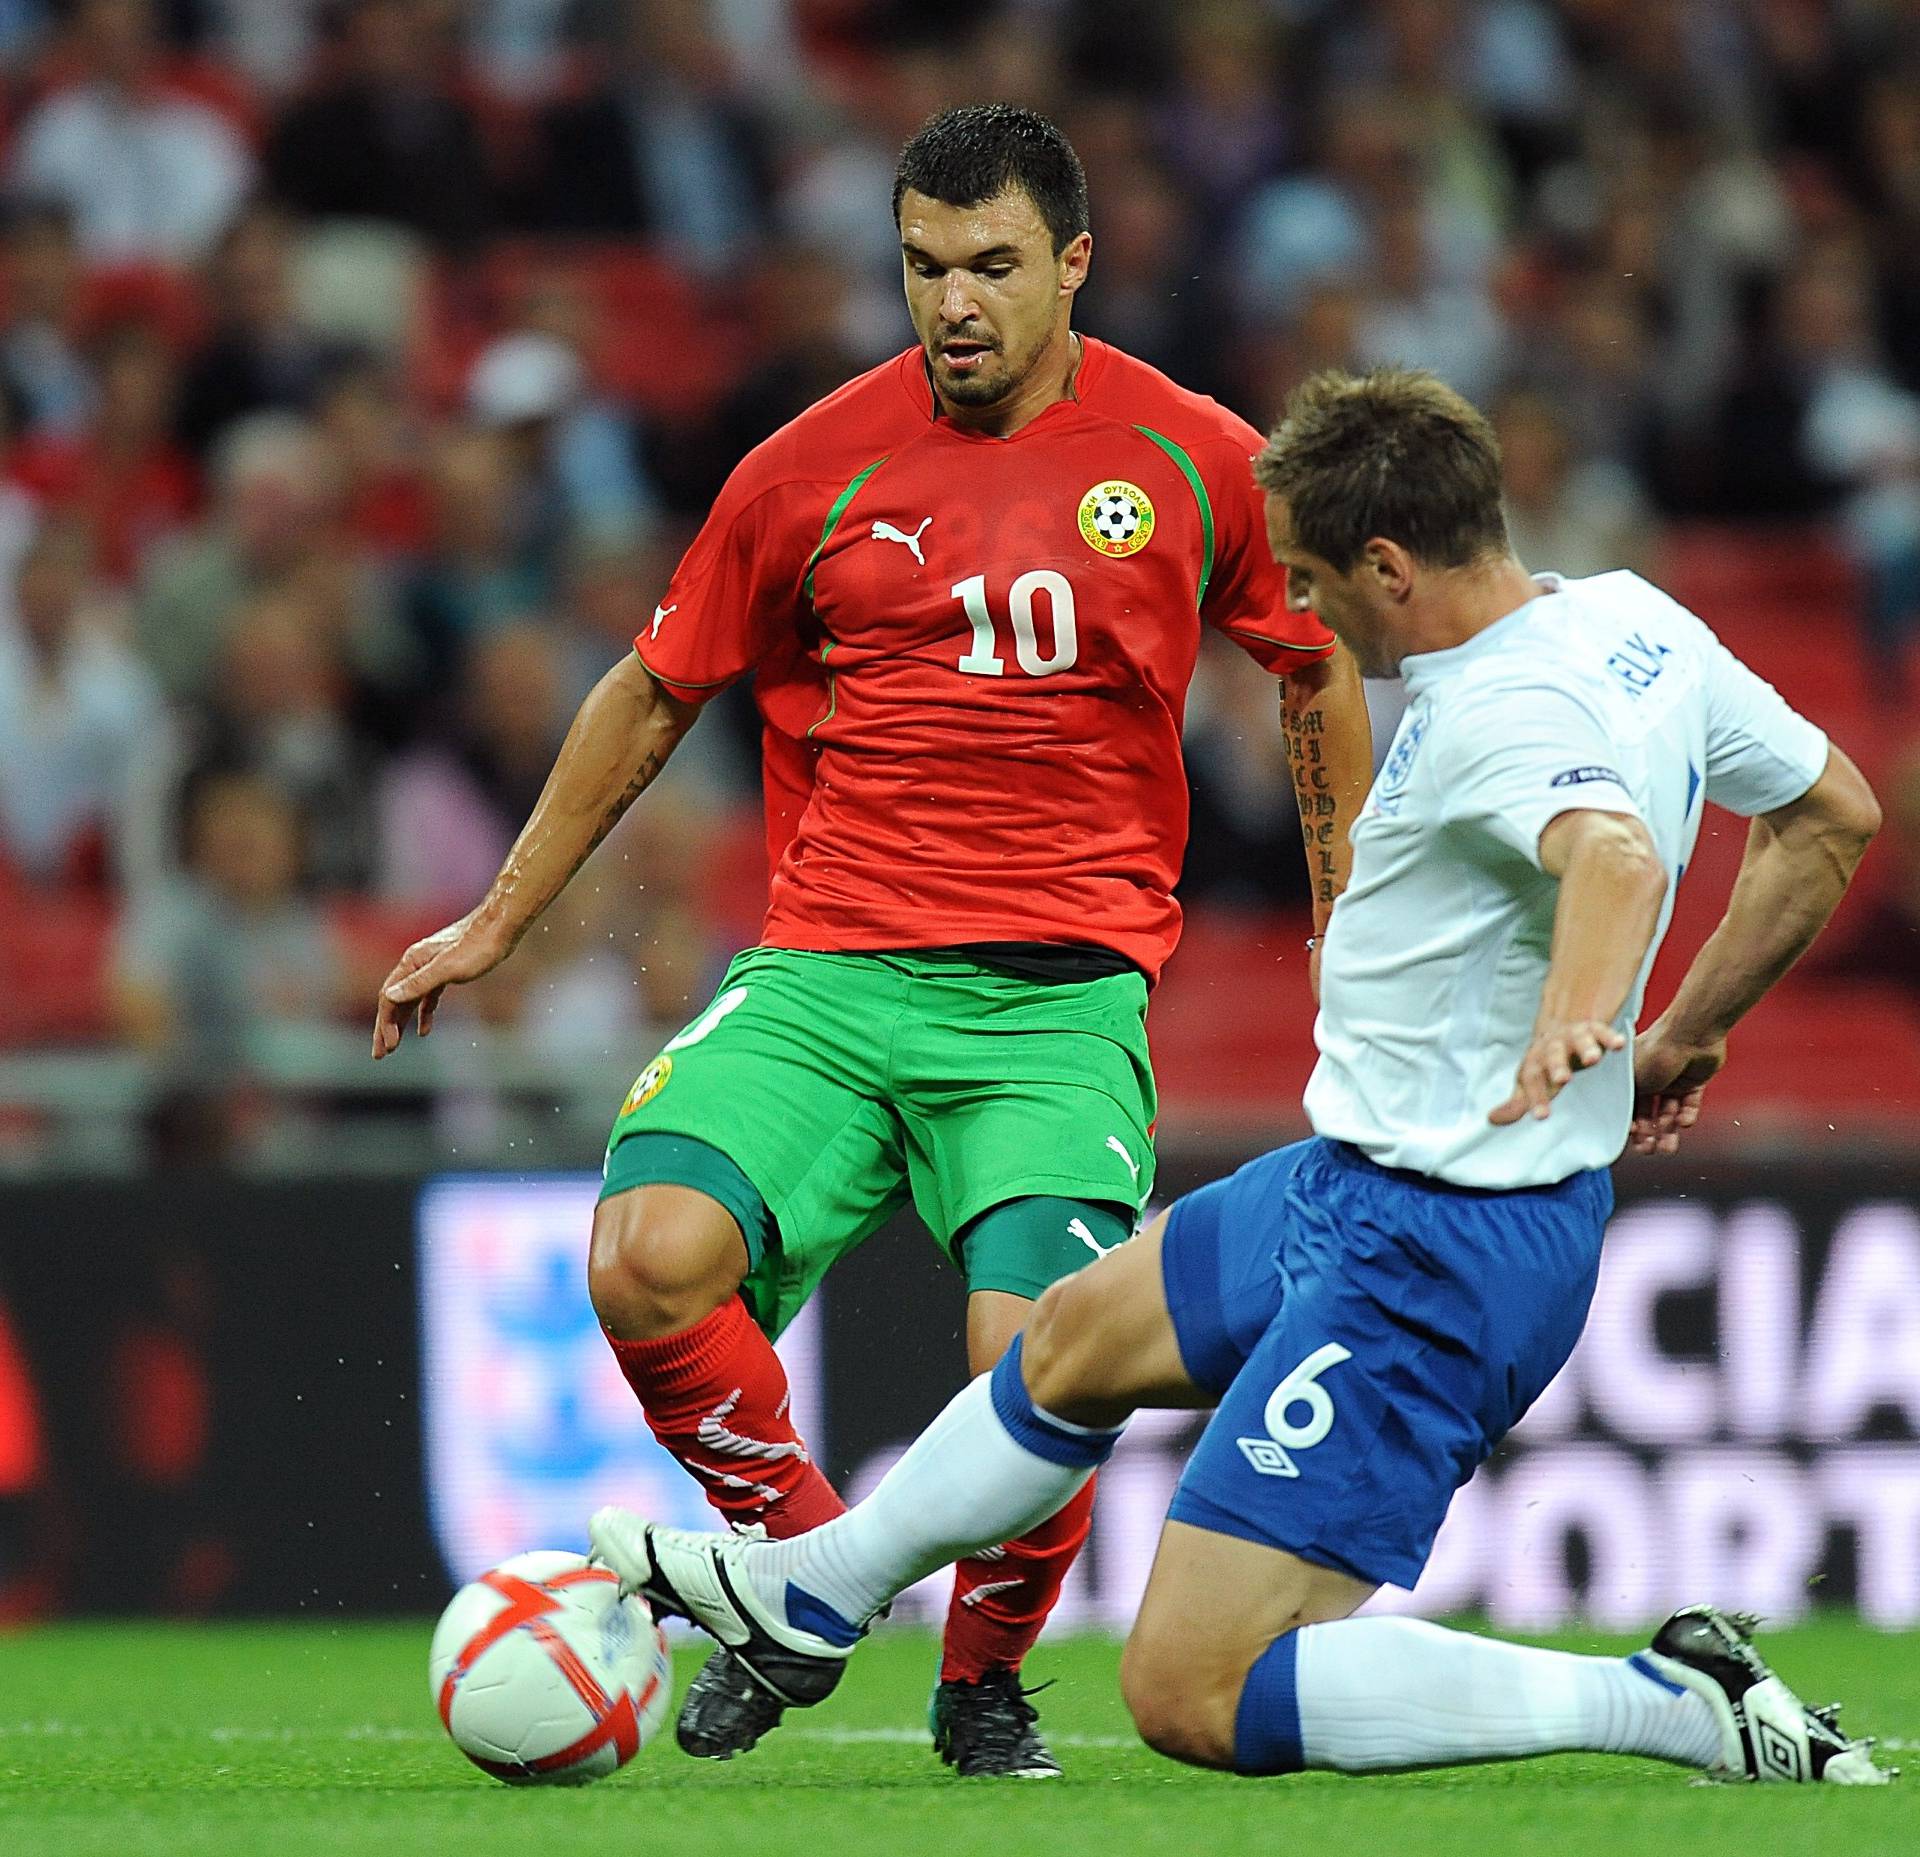 Soccer - UEFA Euro 2012 - Qualifying - Group G - England v Bulgaria - Wembley Stadium